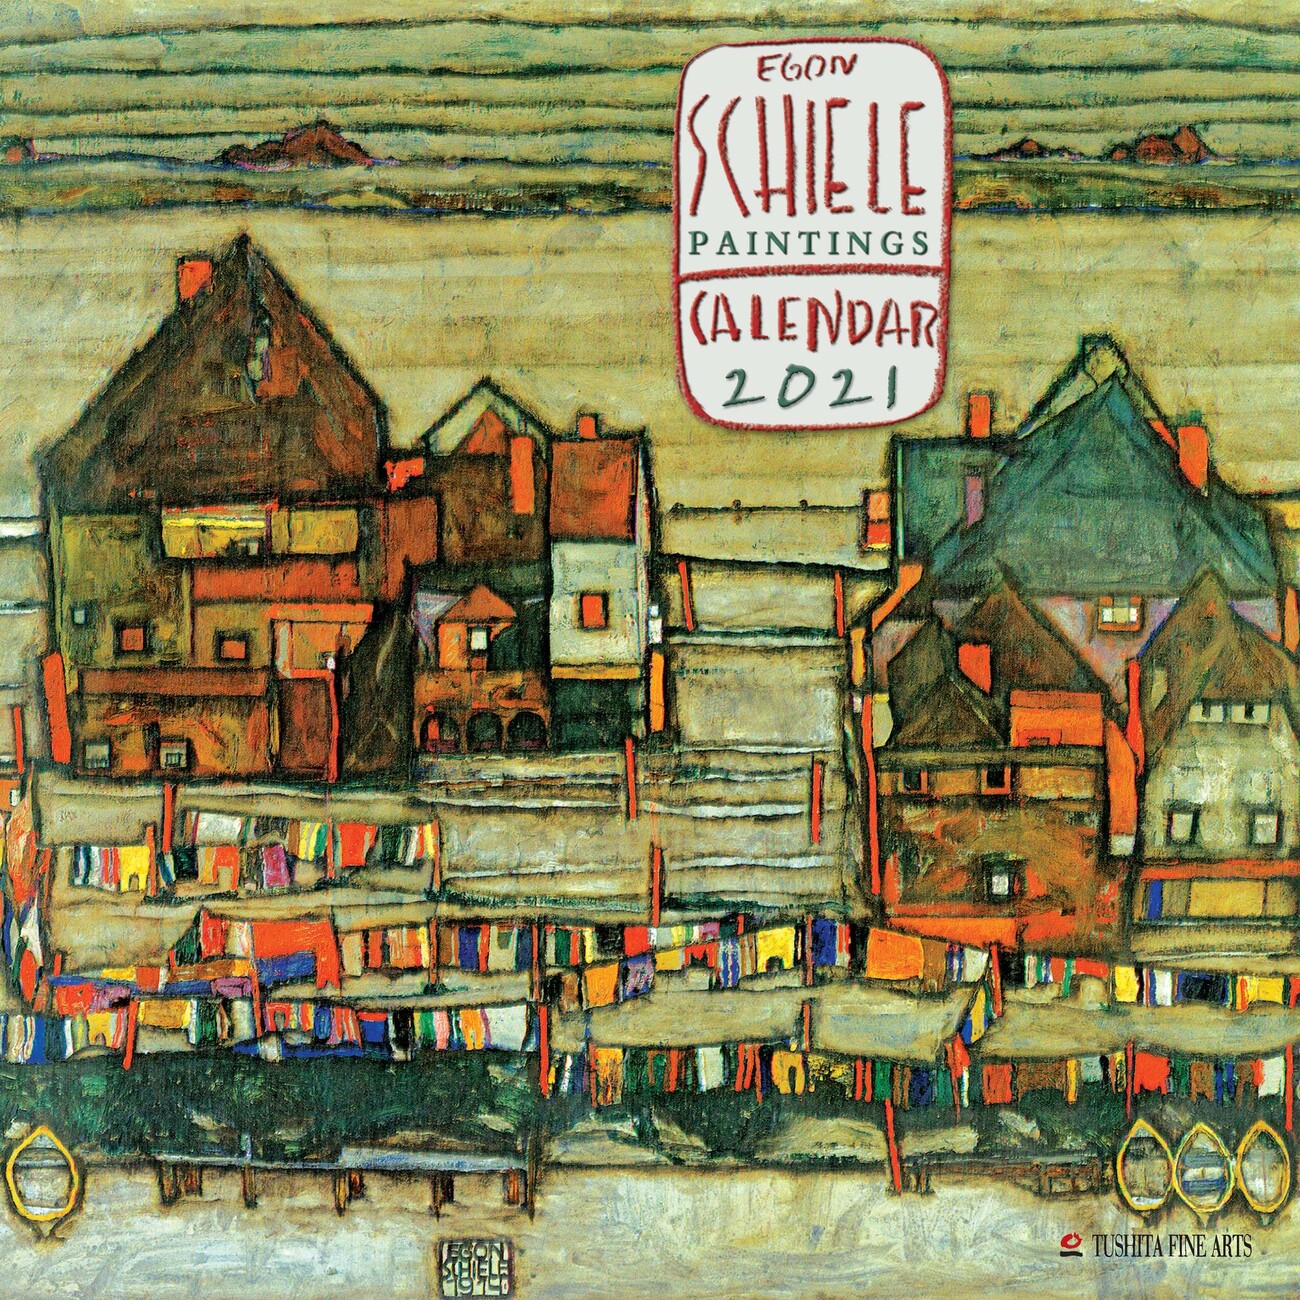 Egon Schiele - Paintings - Calendari da Muro 2021 | Compra su